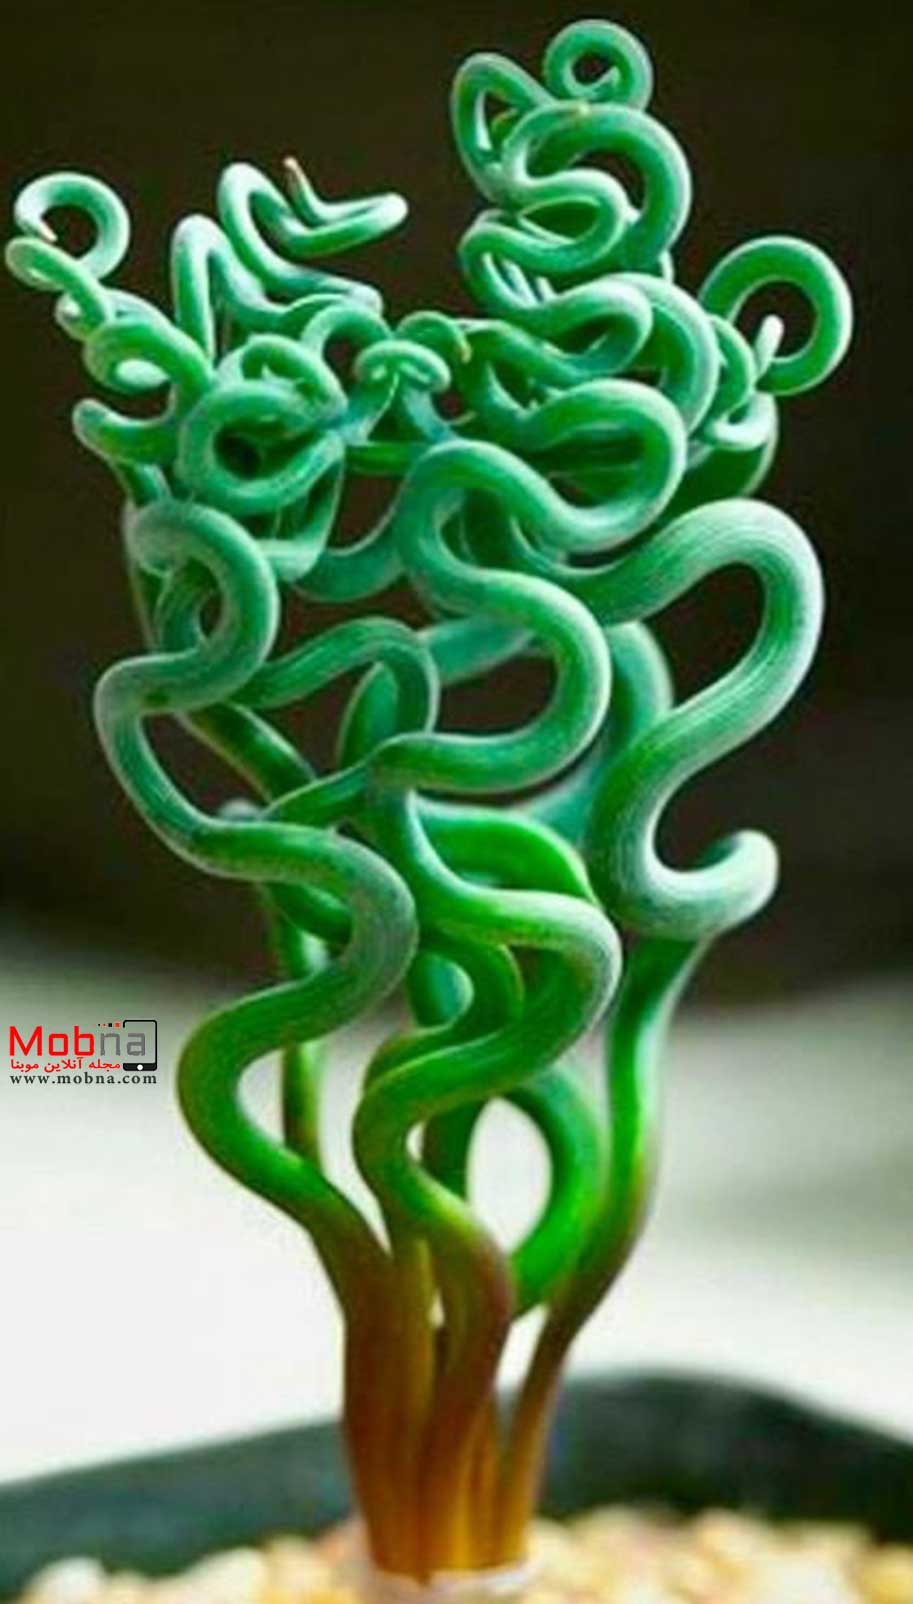 تراچیاندرا ترتلیس ؛ این گیاه با ظاهر عجیب و خاص! (+عکس)